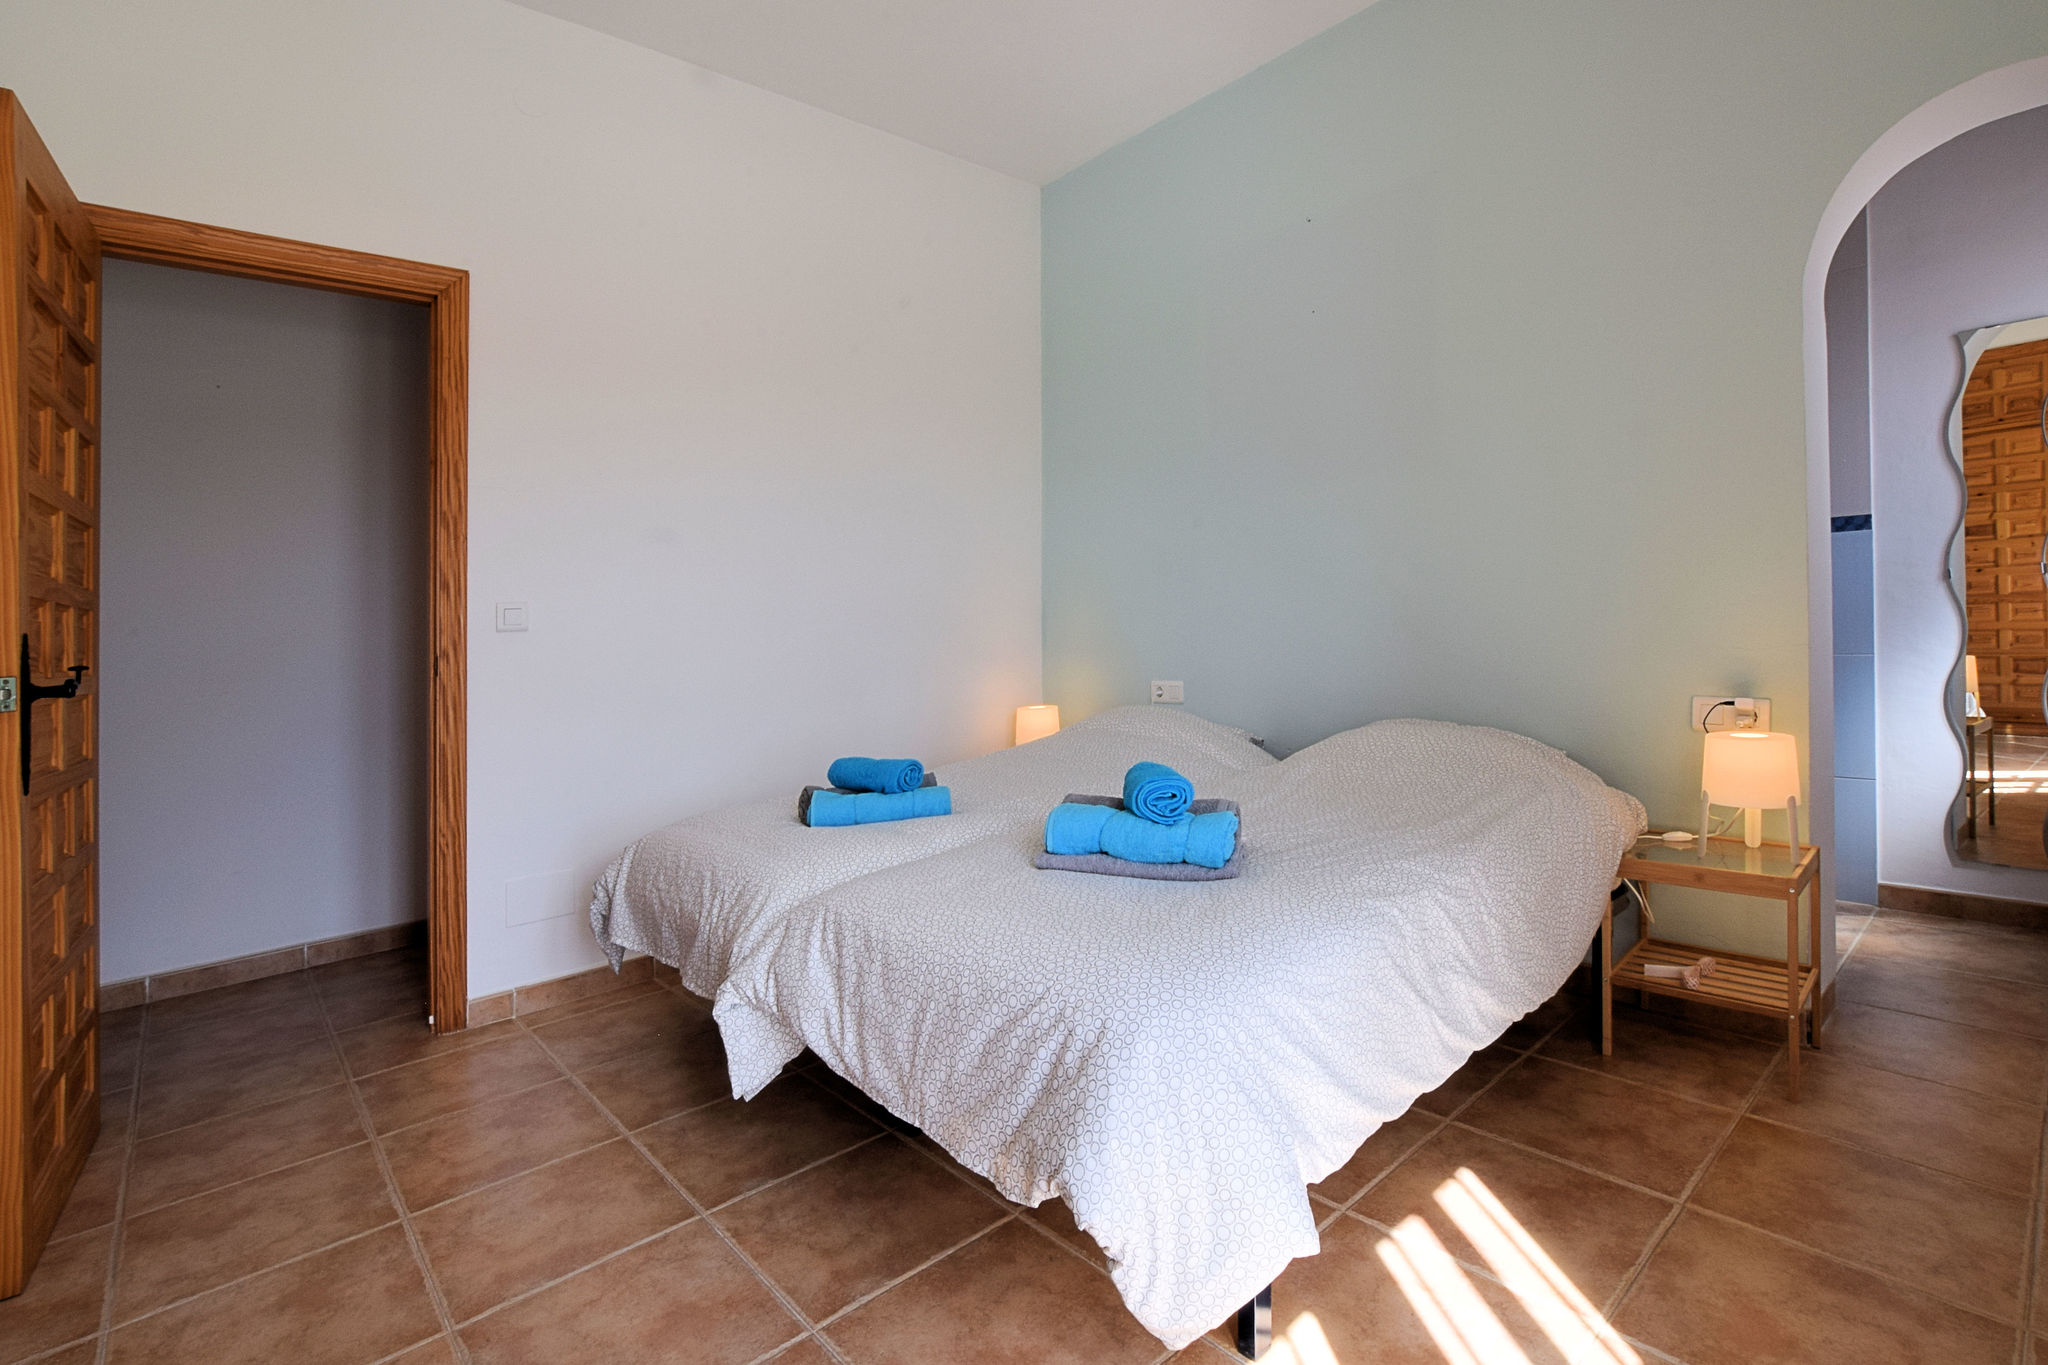 Ruime villa in Arenas met zeezicht en privé zwembad, vlakbij Arenas